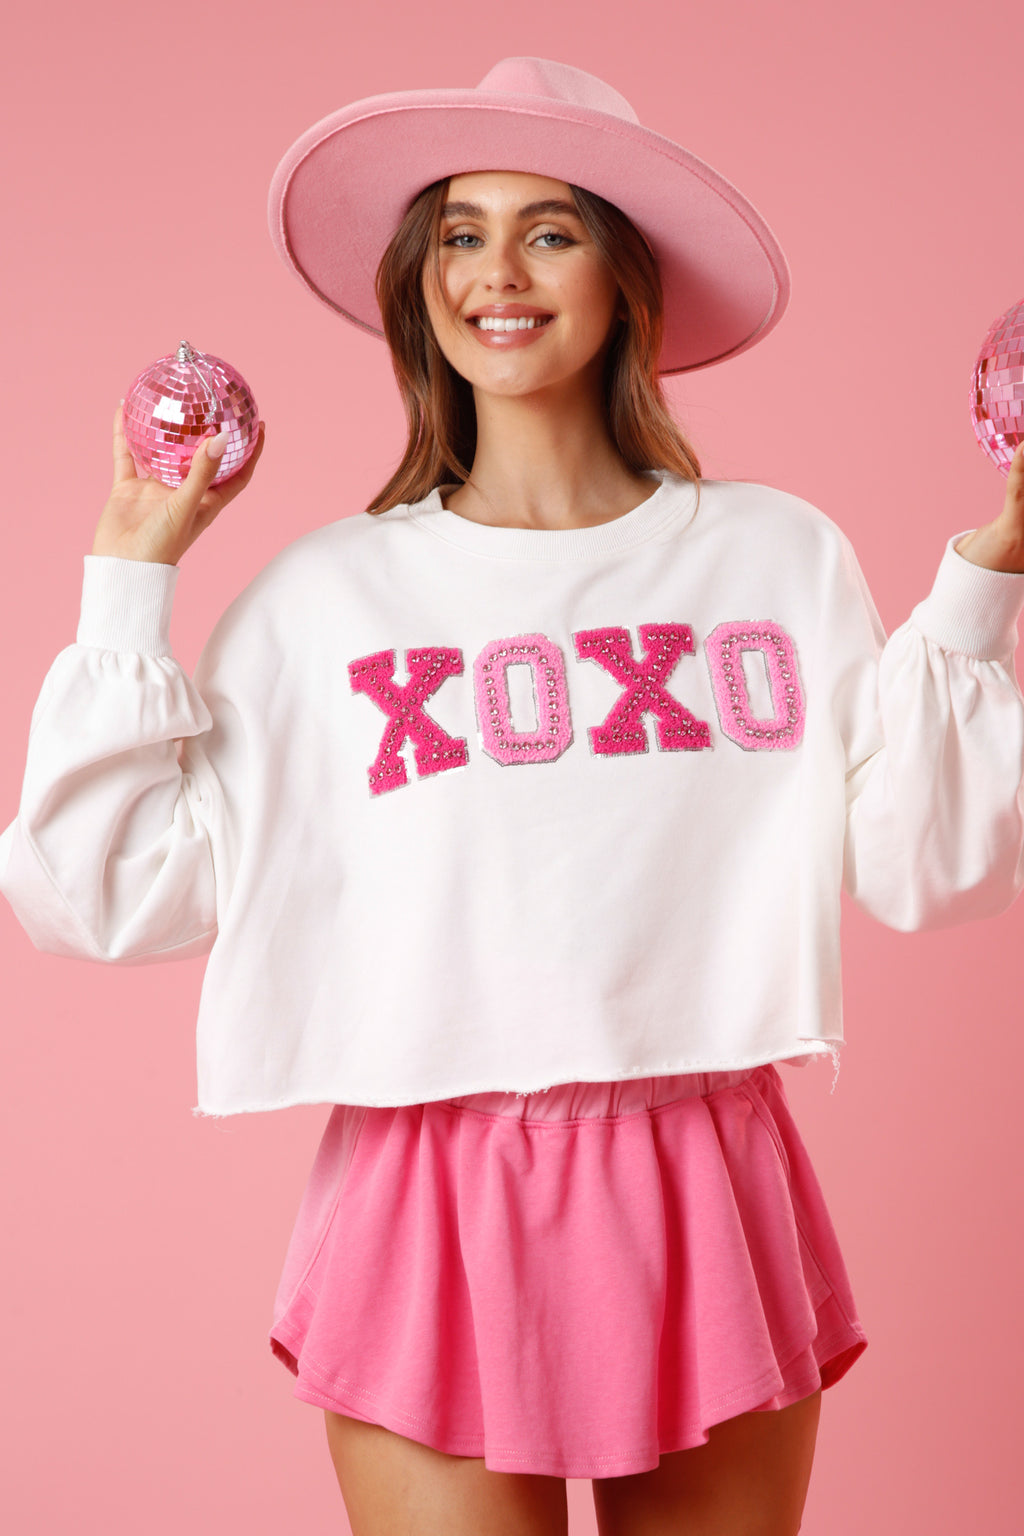 XOXO Sequin Edge Embellished Patch Sweatshirt